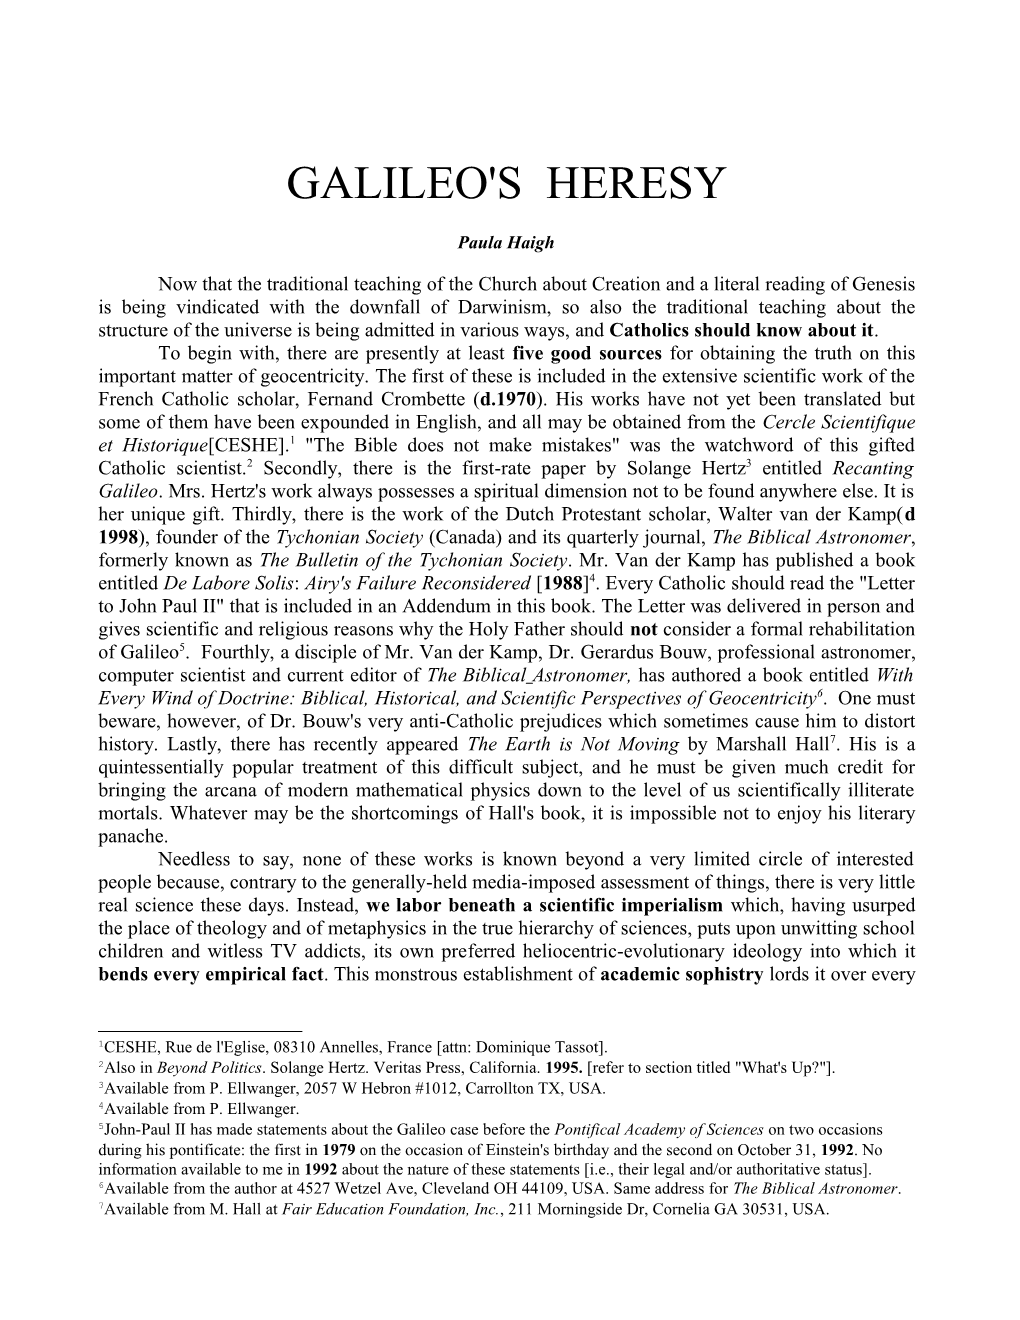 Galileo's Heresy